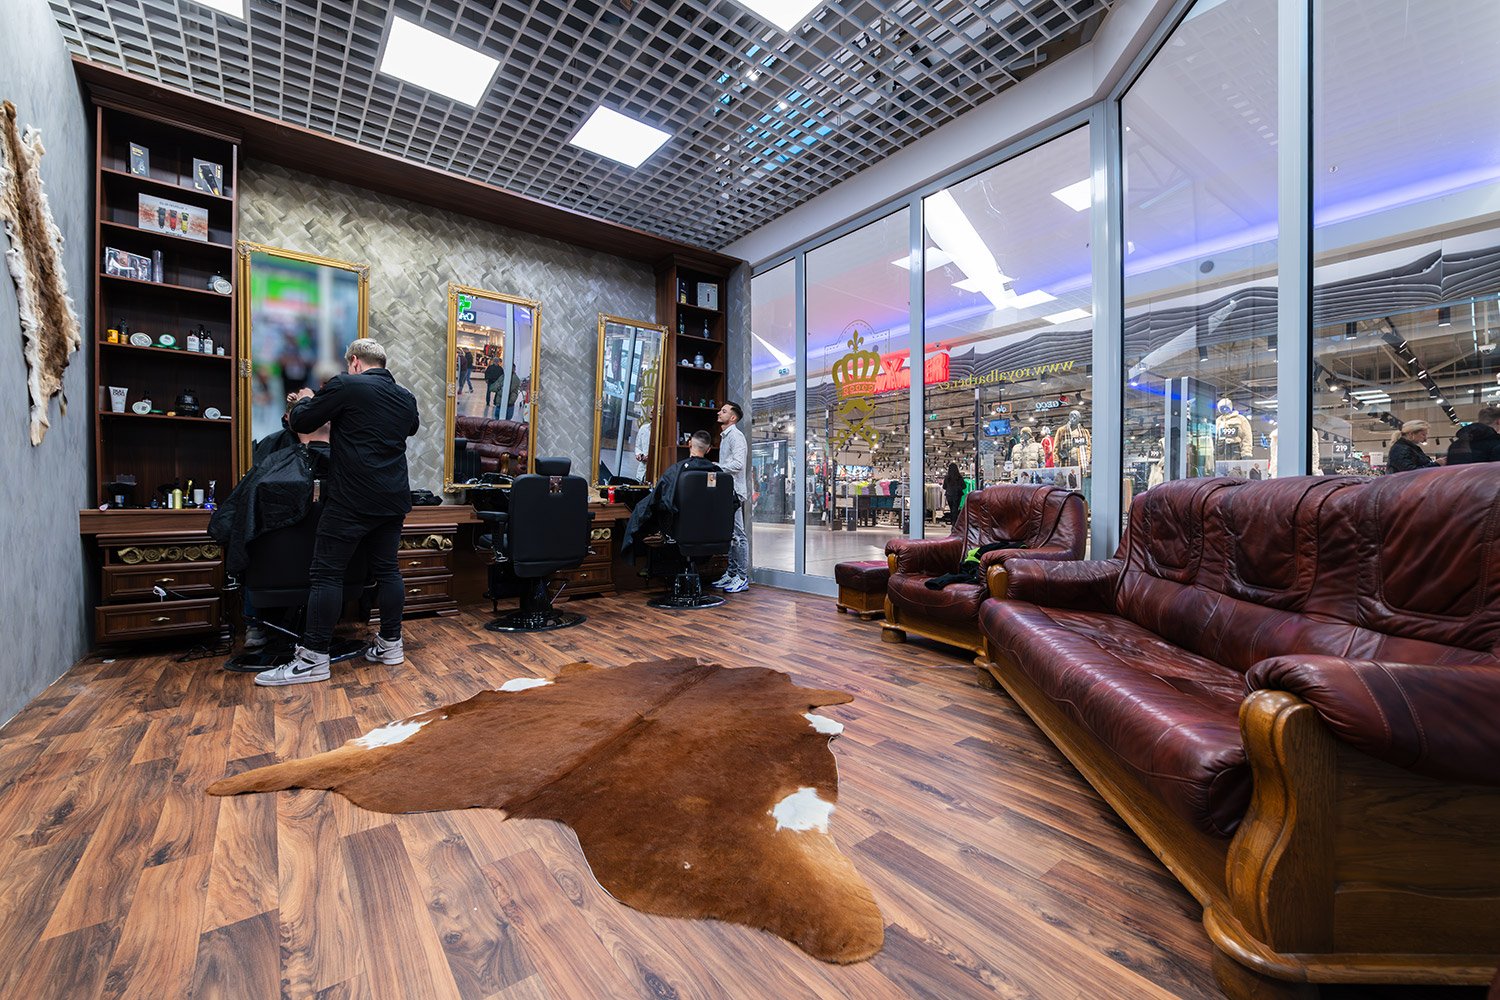 Royal Barber Shop